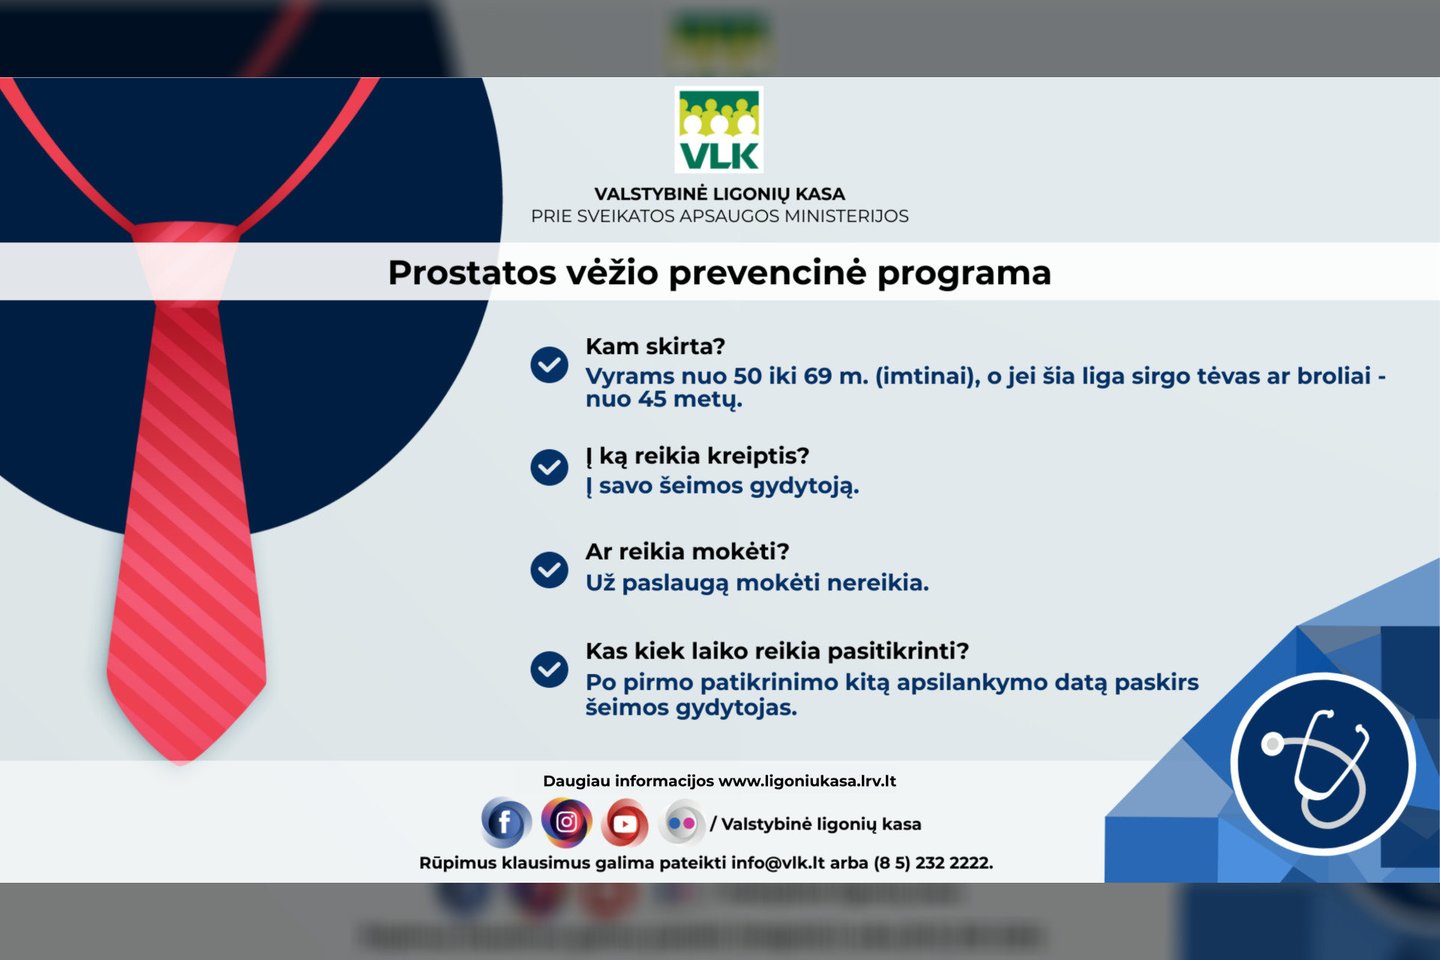 Prostatos vėžio patikros programa<br>VLK infografikas